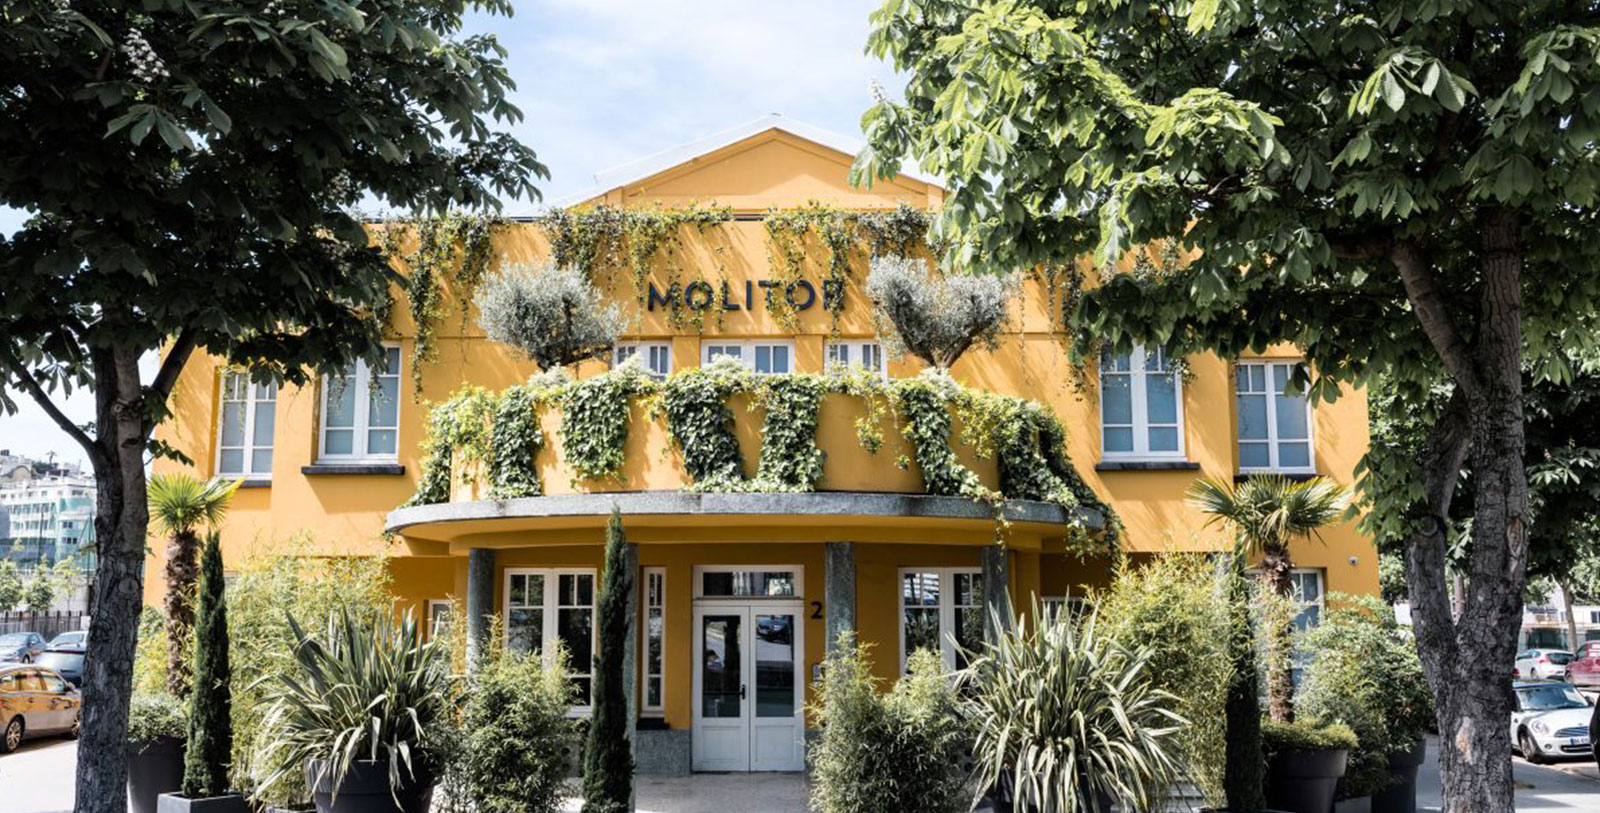 Explore the Marmottan Monet Museum and the Louis Vuitton Foundation of Paris' Bois de Boulogne.